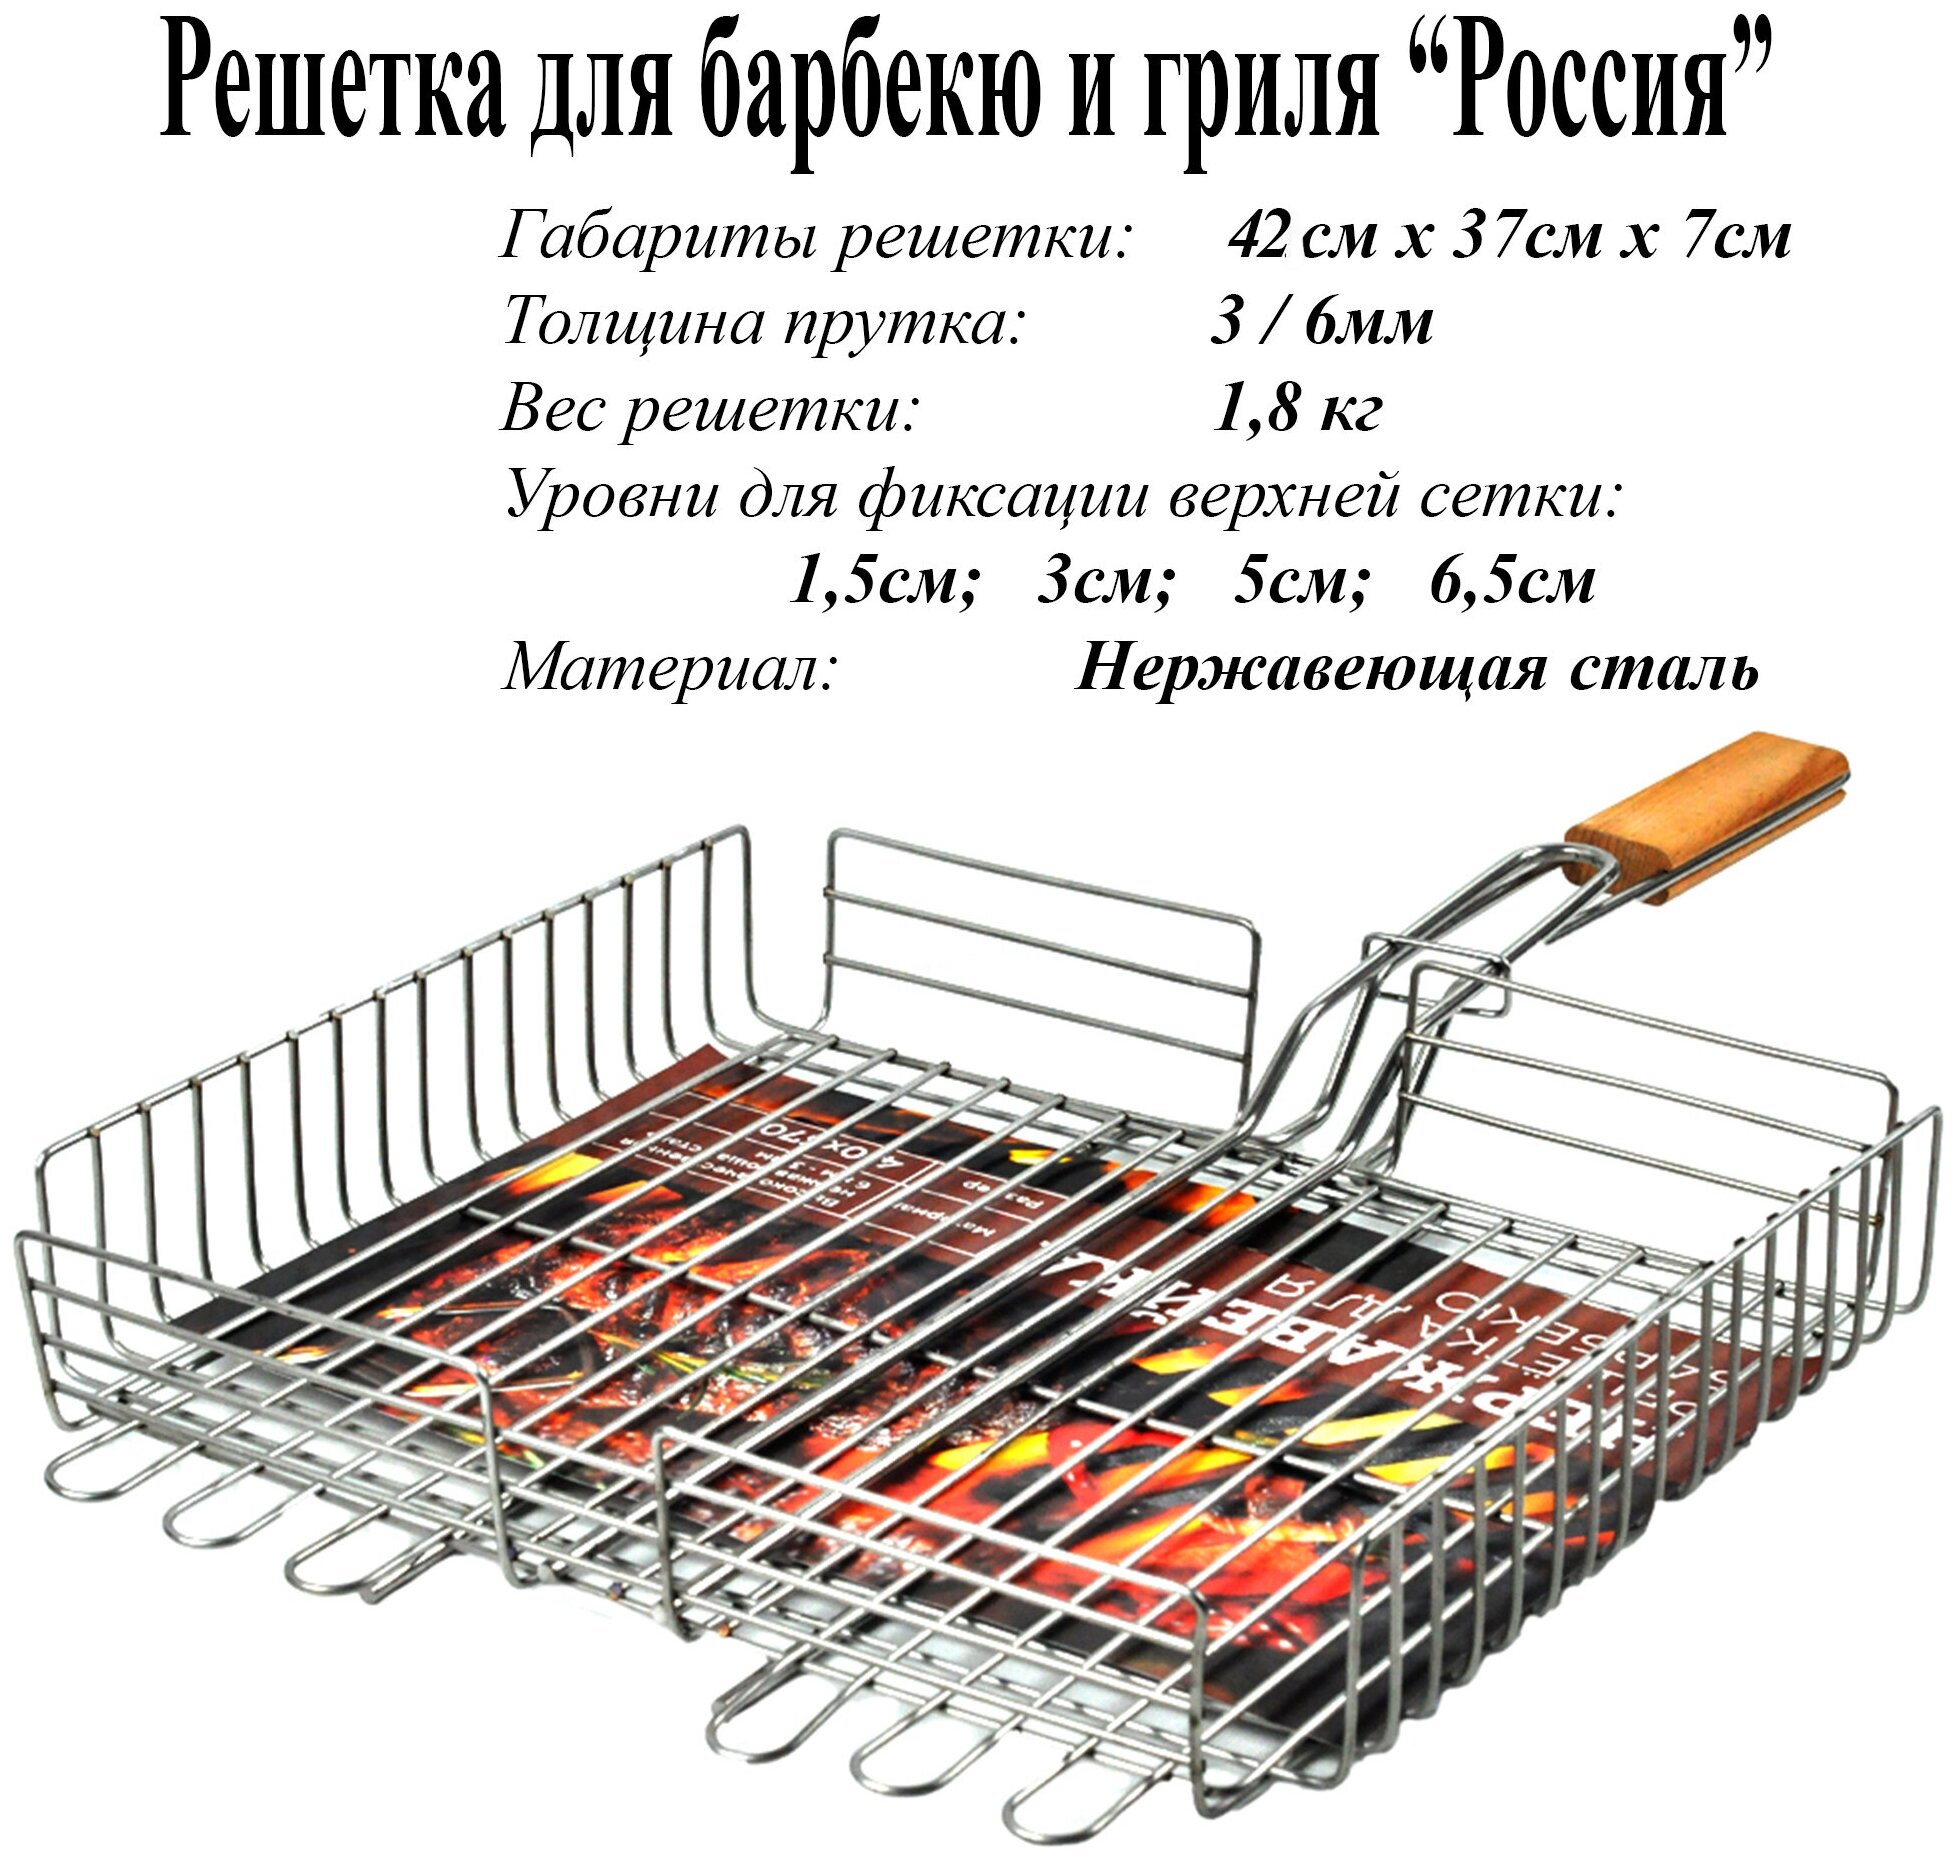 Решетка для барбекю и гриля россия надежная из пищевой нержавеющей стали.